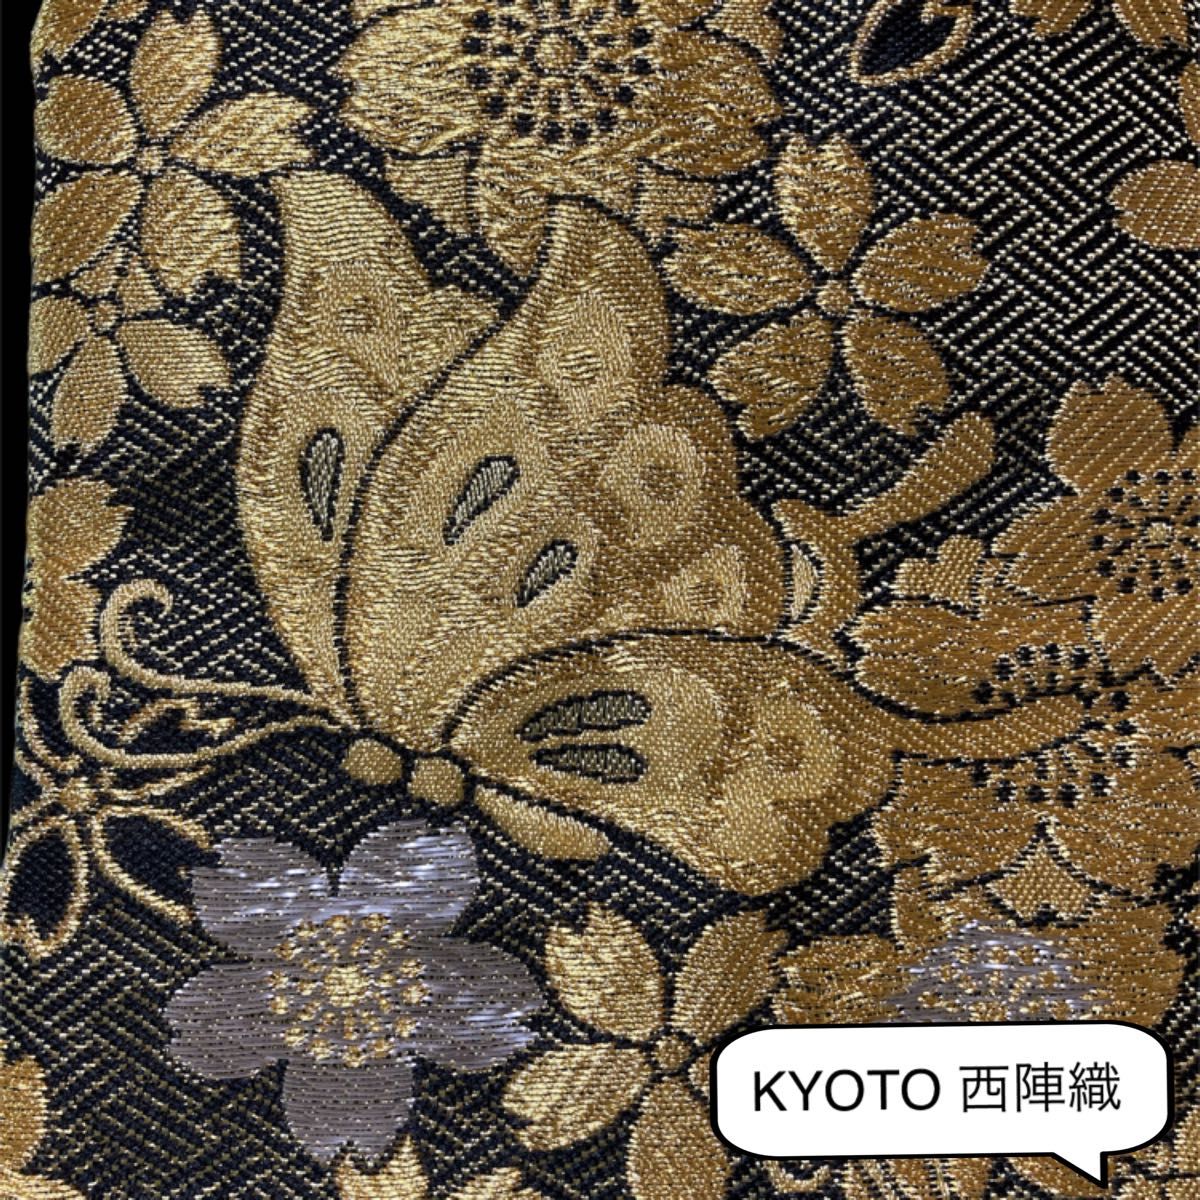 贅沢で大人可愛い1つは欲しい和のぽーち 豪華で美しい日本の伝統KYOTO西陣織 多目的ぽーち【No.001】